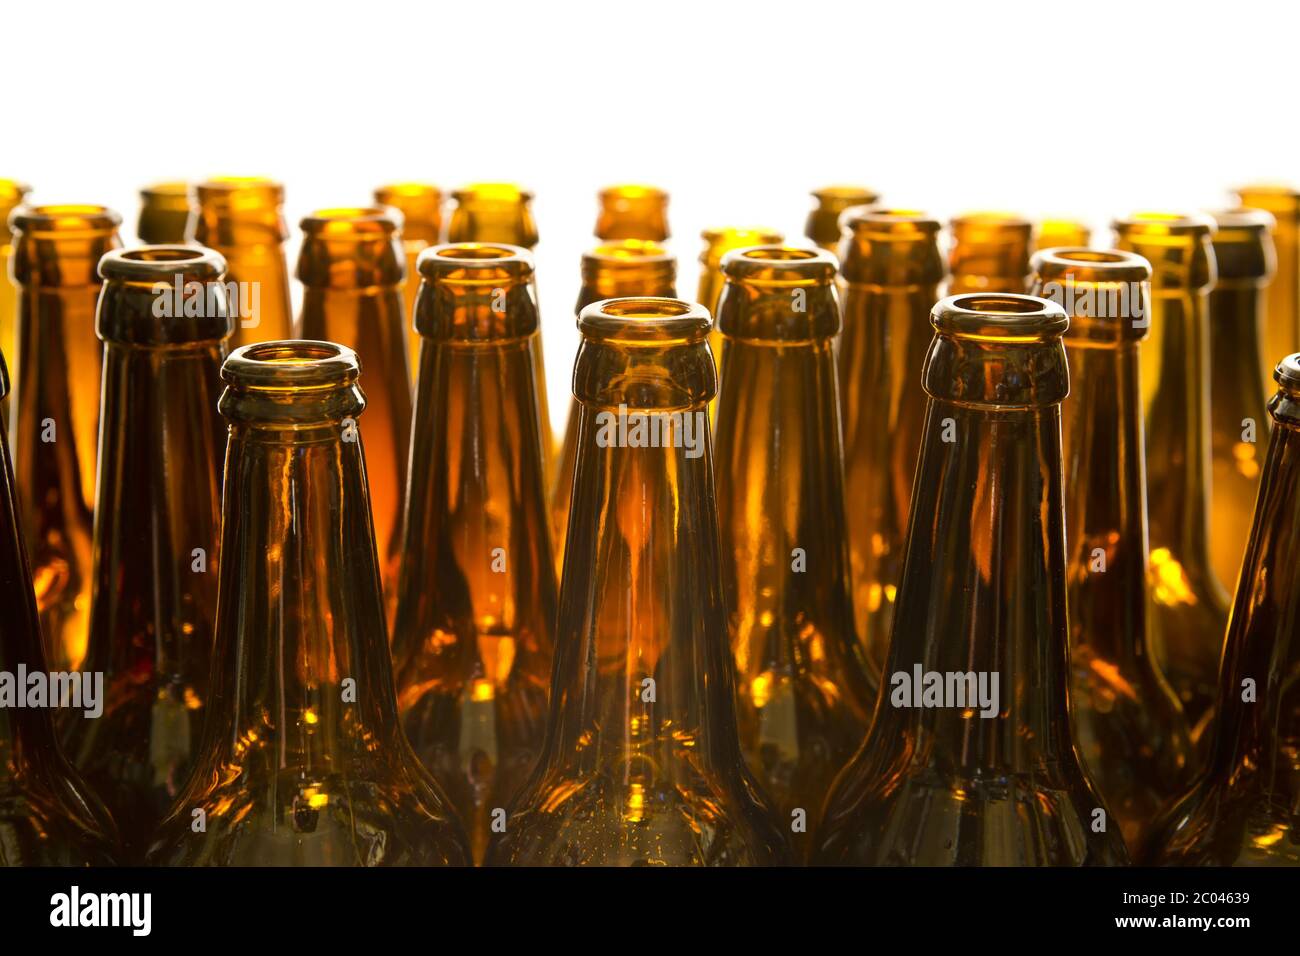 Empty glass beer bottles Stock Photo